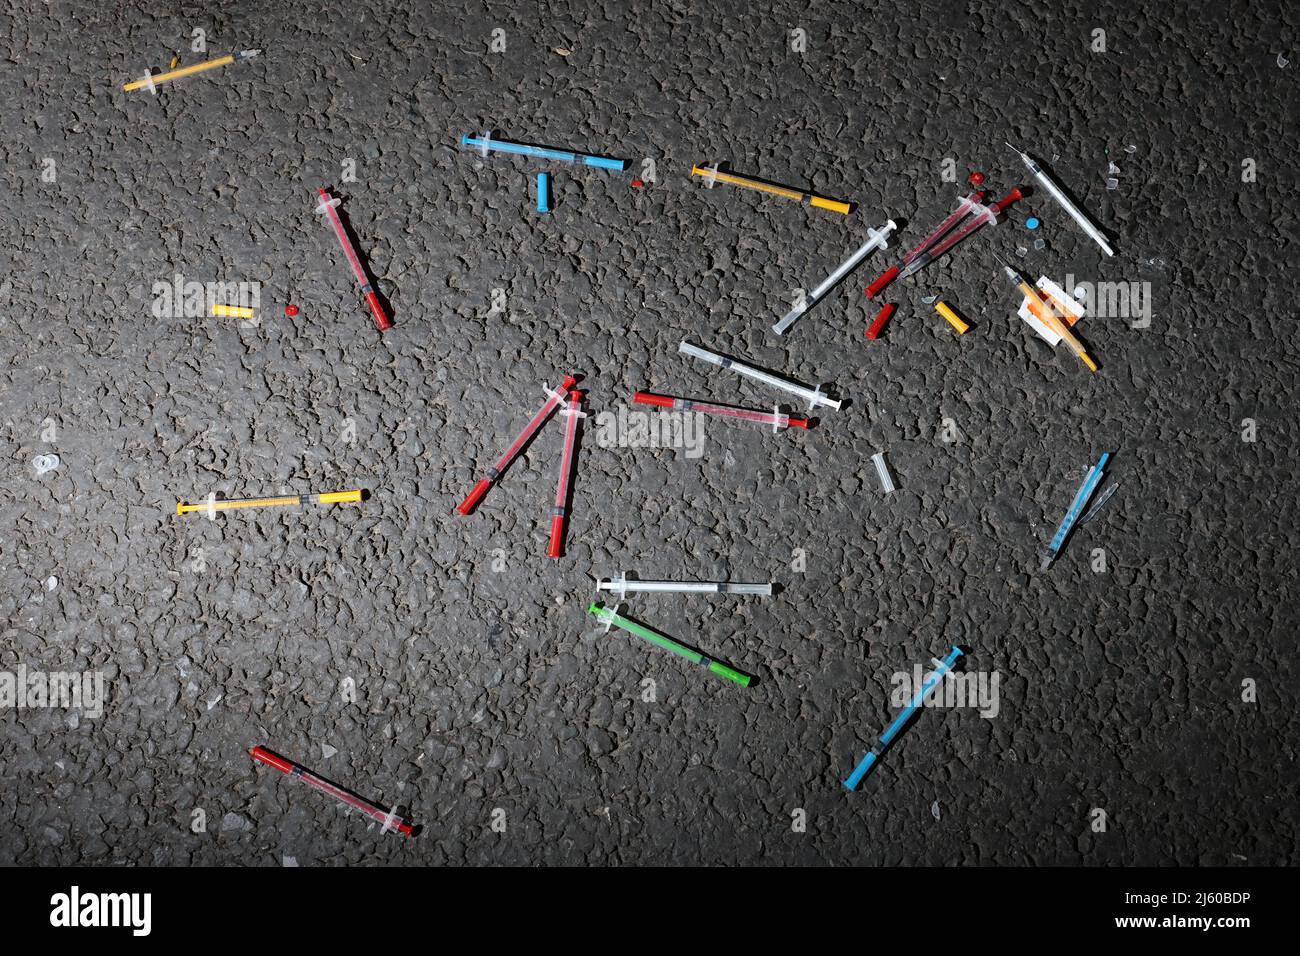 Una carga de agujas de drogas coloridas encontradas en la calle en Exeter, Devon, Reino Unido. Foto de stock